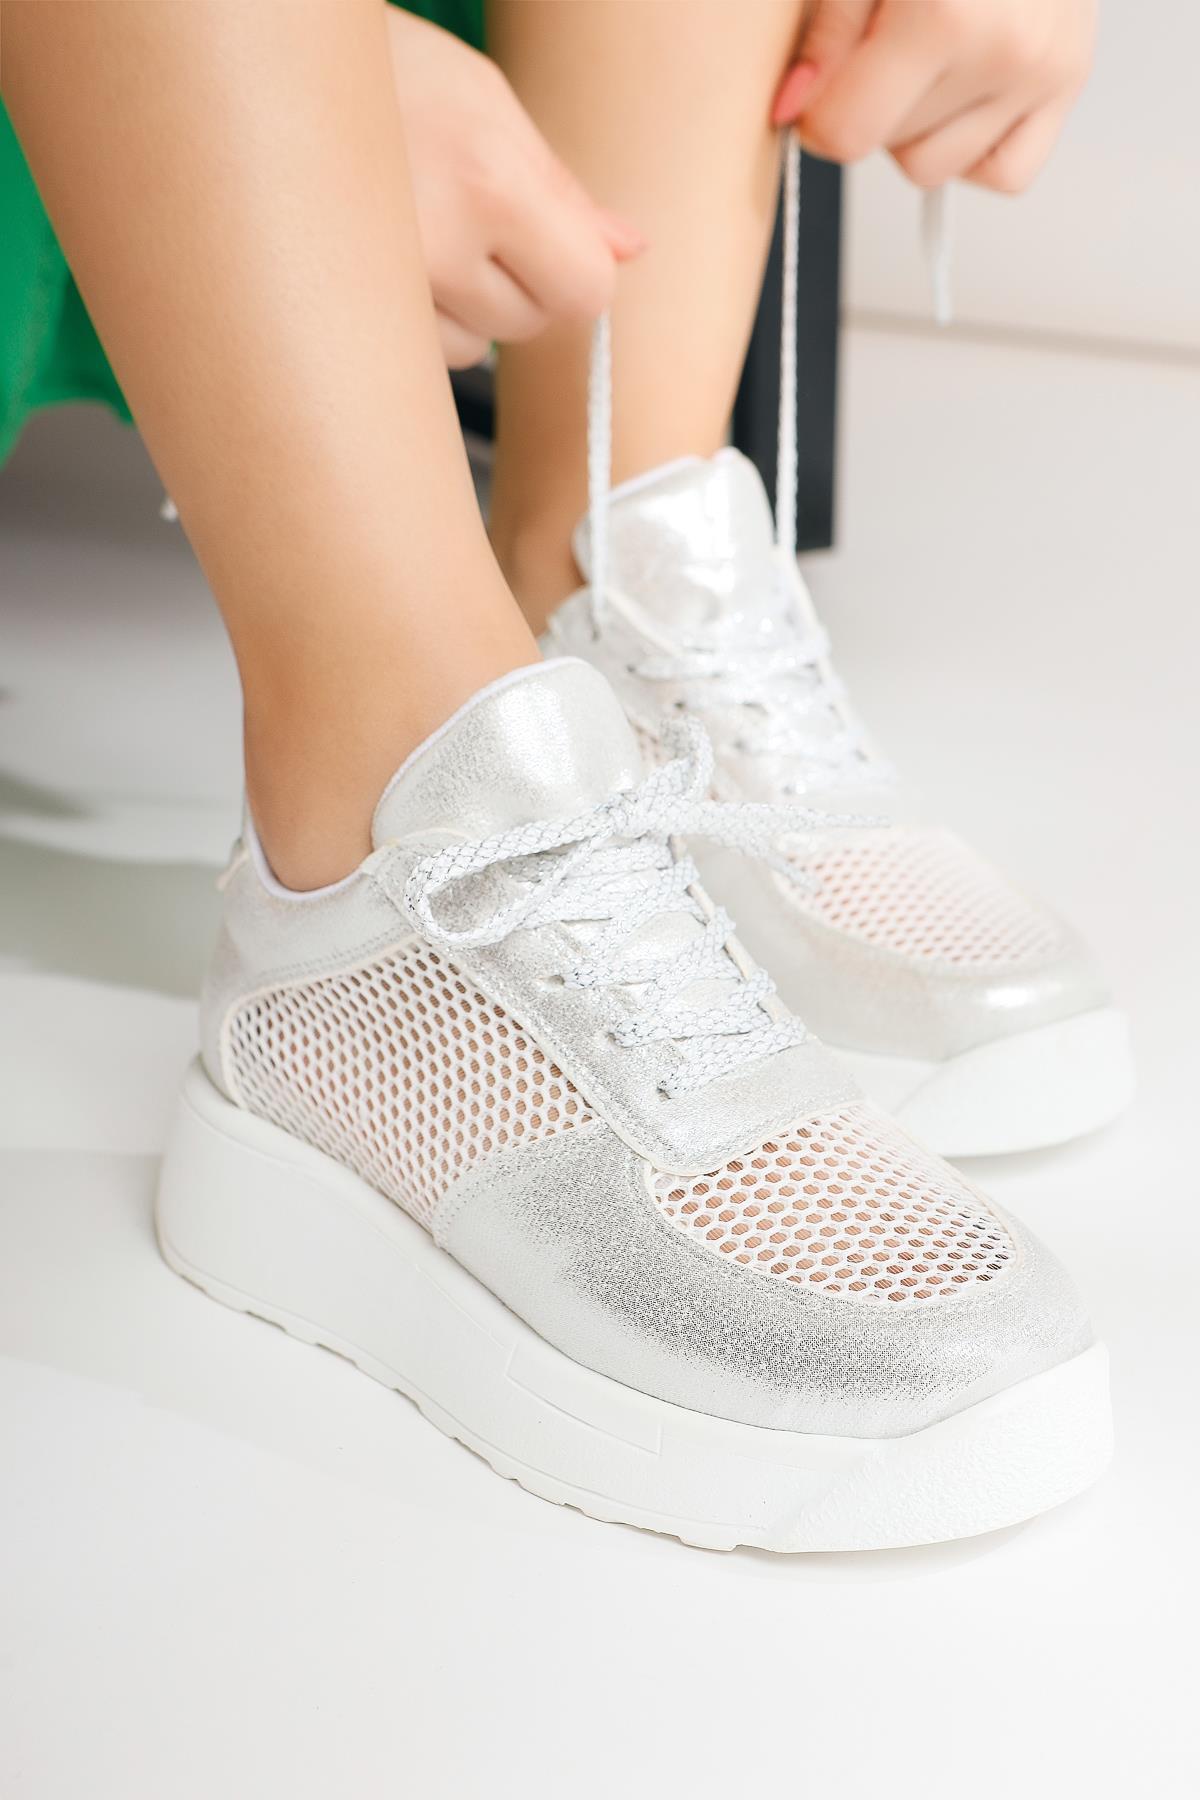 Kany Gümüş Fileli Sneakers Spor Ayakkabı